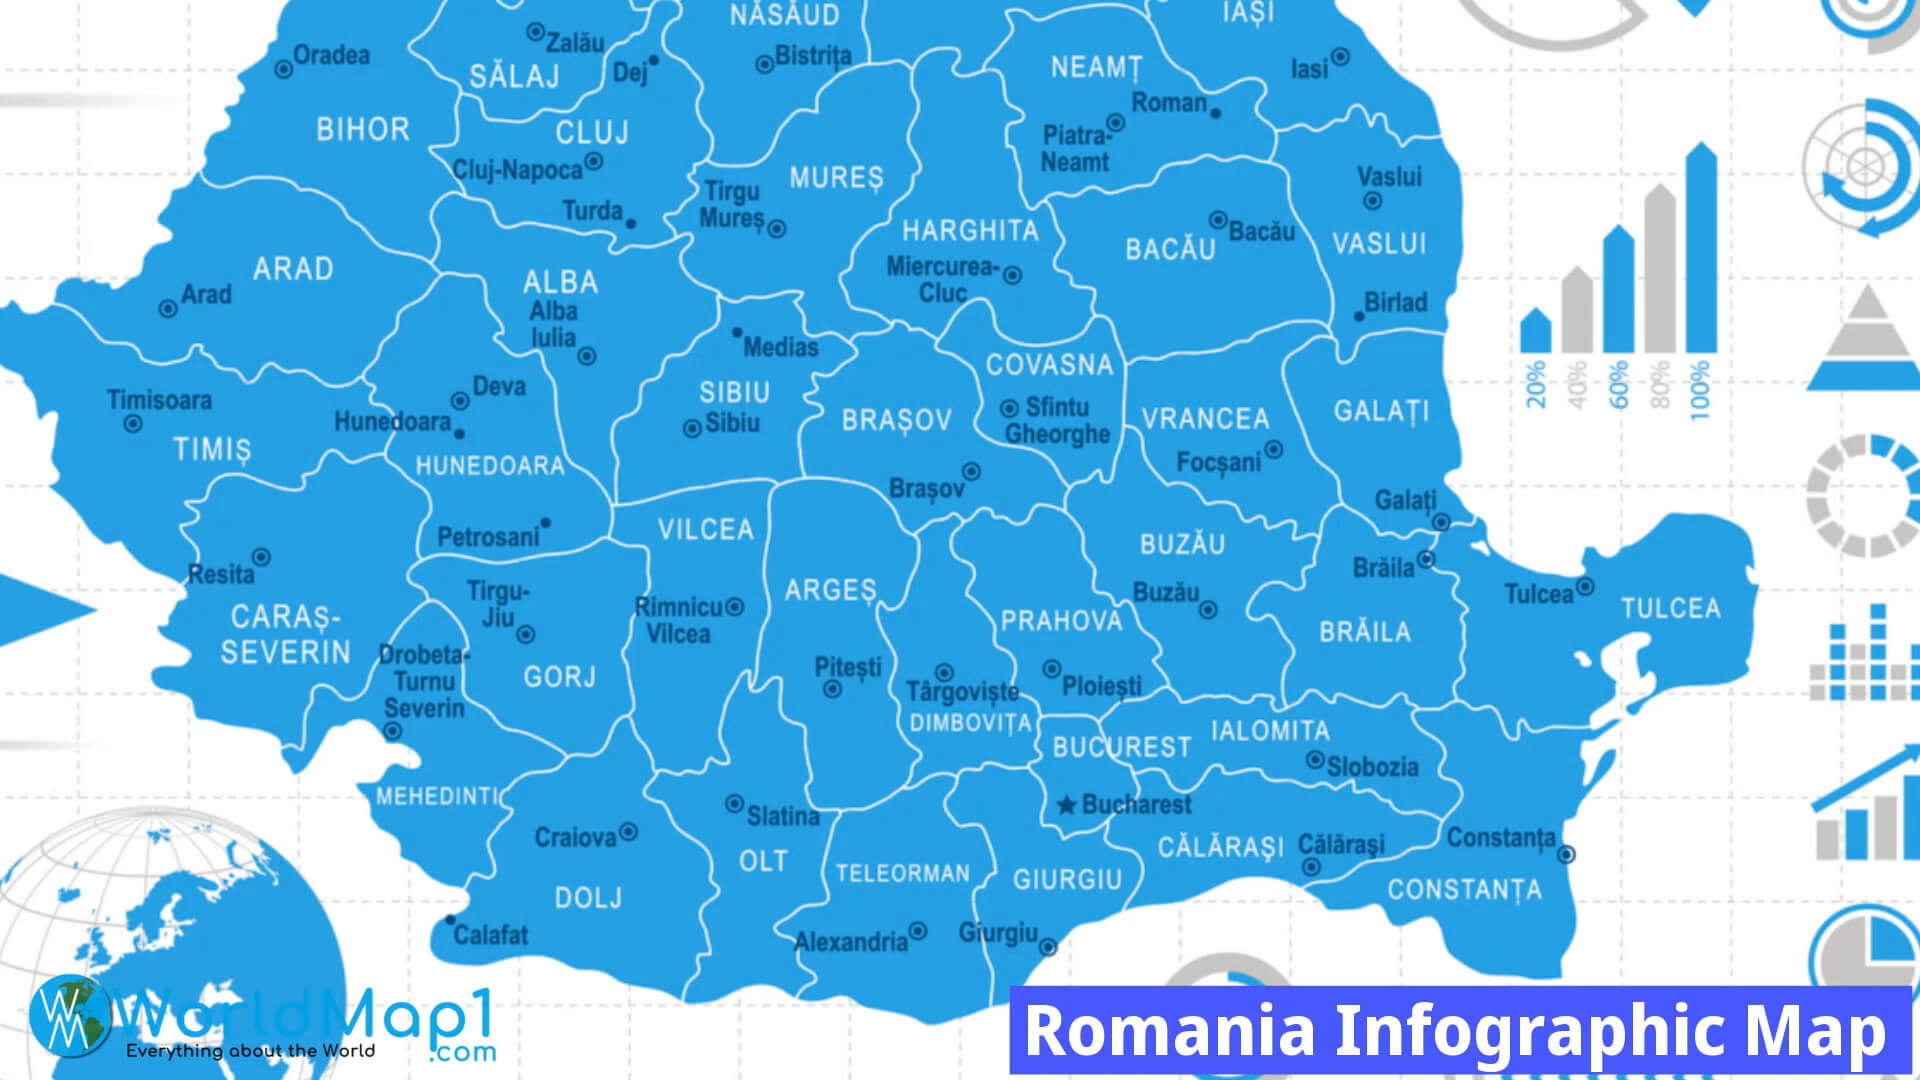 Romanya infografik Haritası